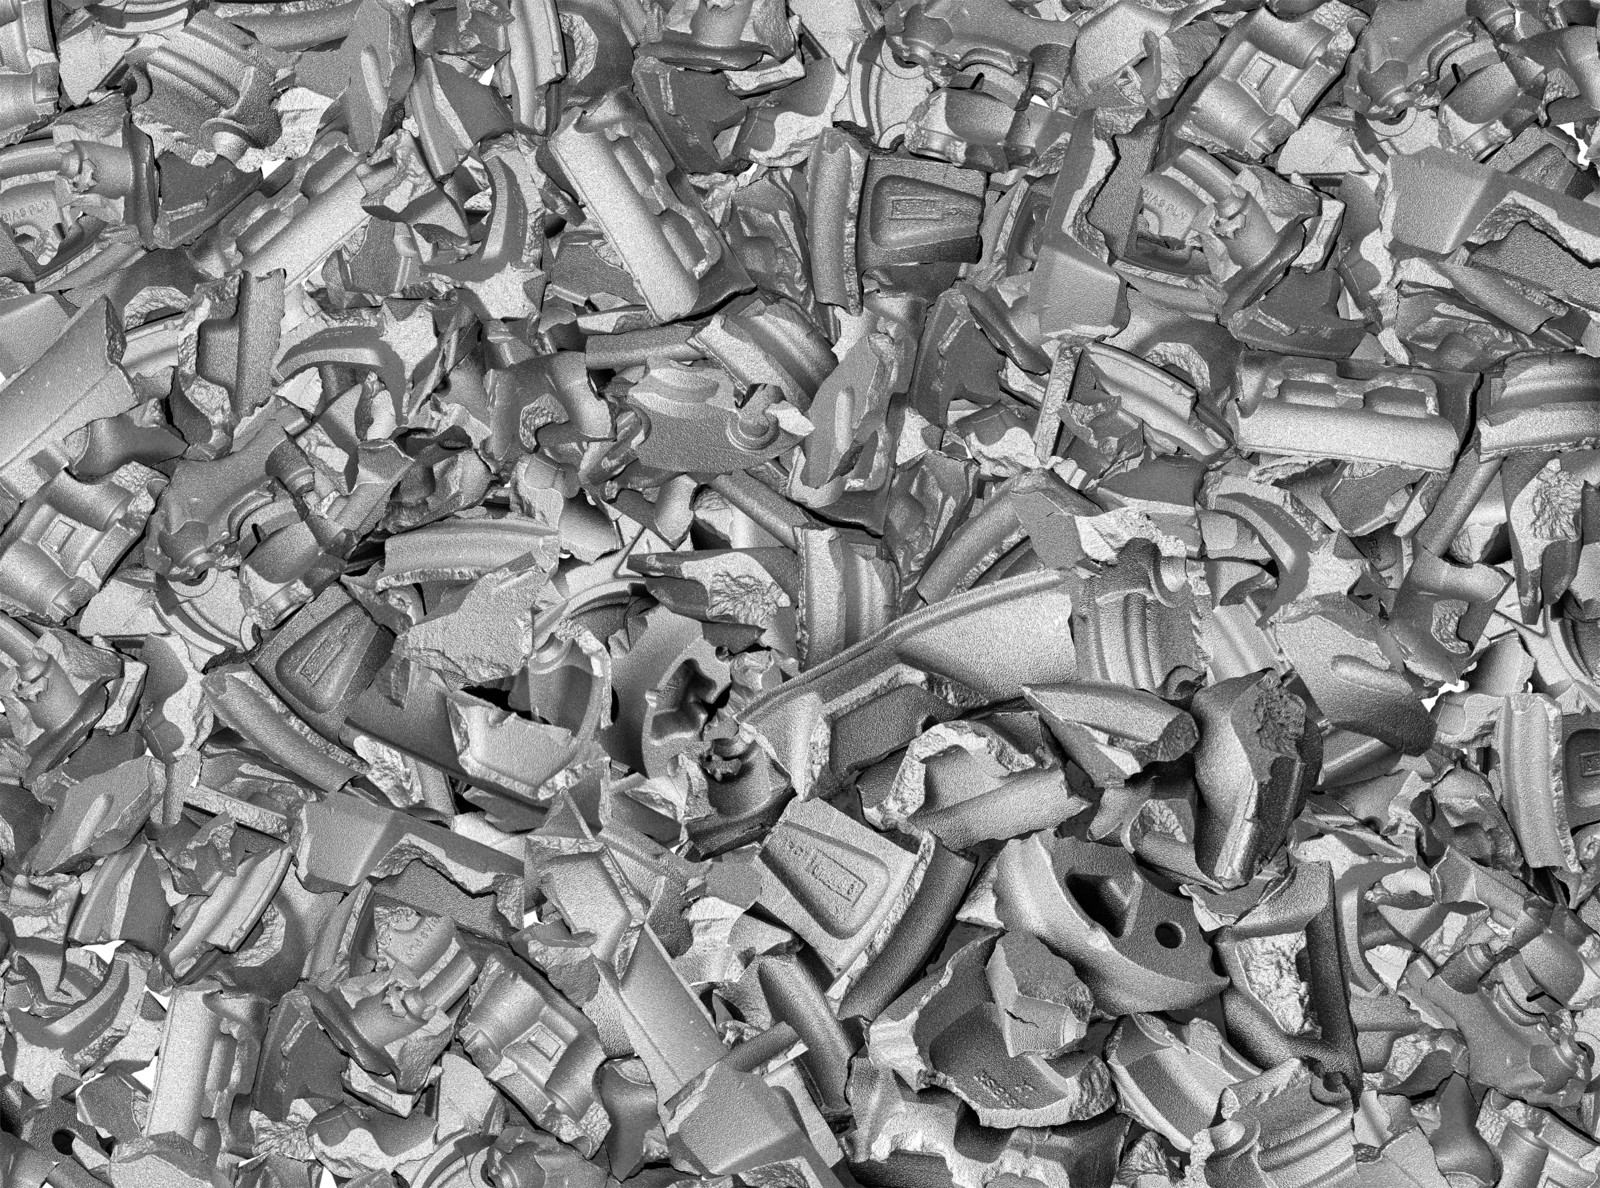 Geschredderte Felgenreste sind Teil des Ausgangsmaterials – Nabentöpfe, Speichen und Teilenummmern sind noch zu erahnen